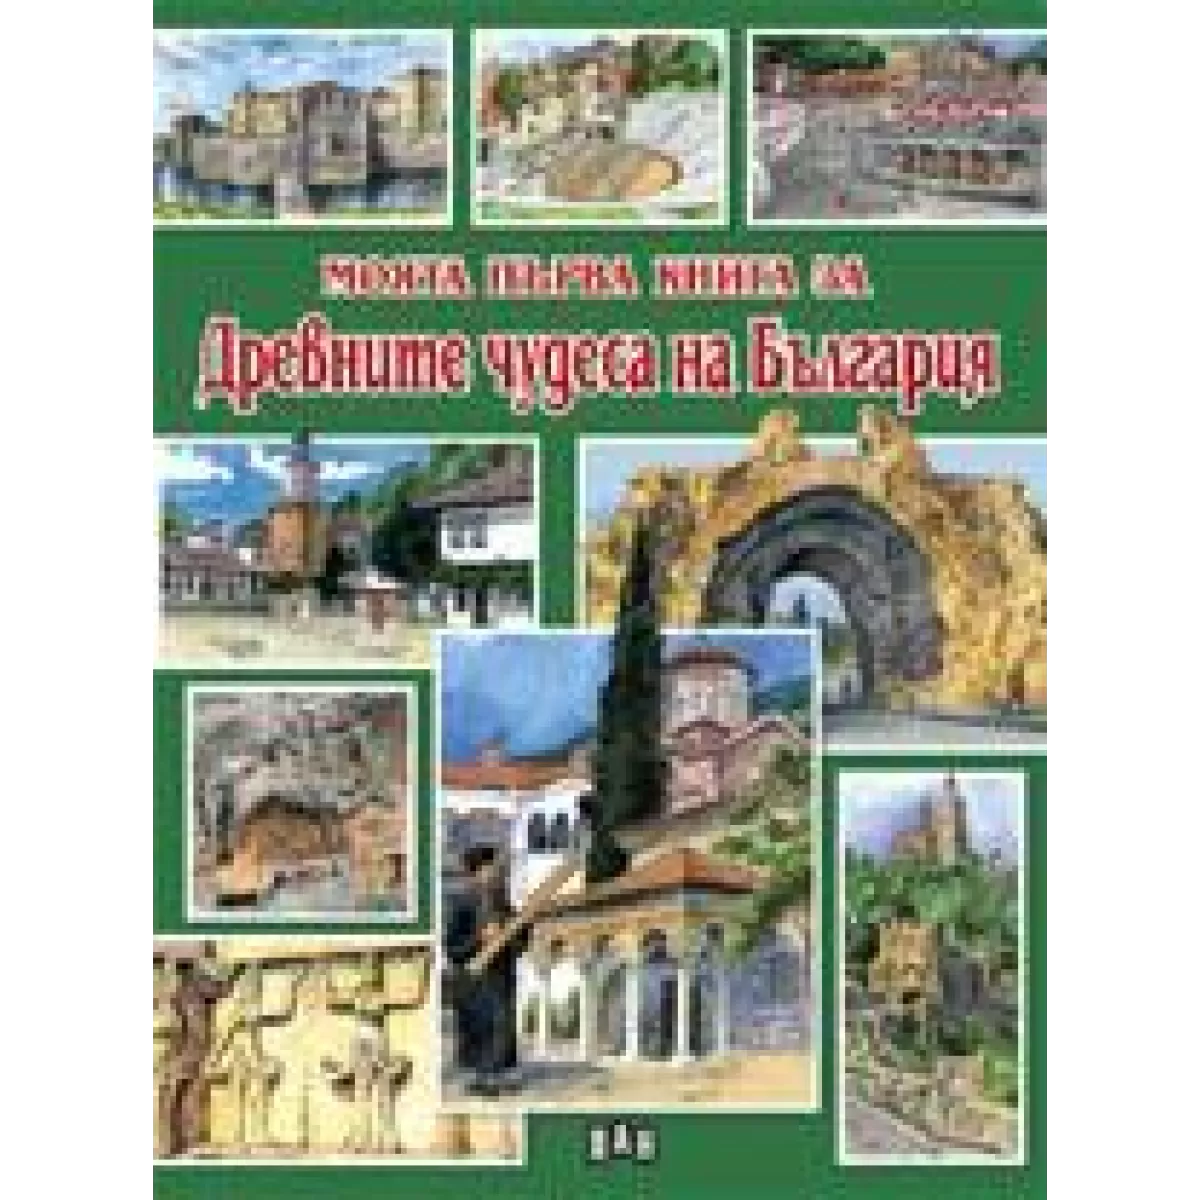 Моята първа книга за древните чудеса на България